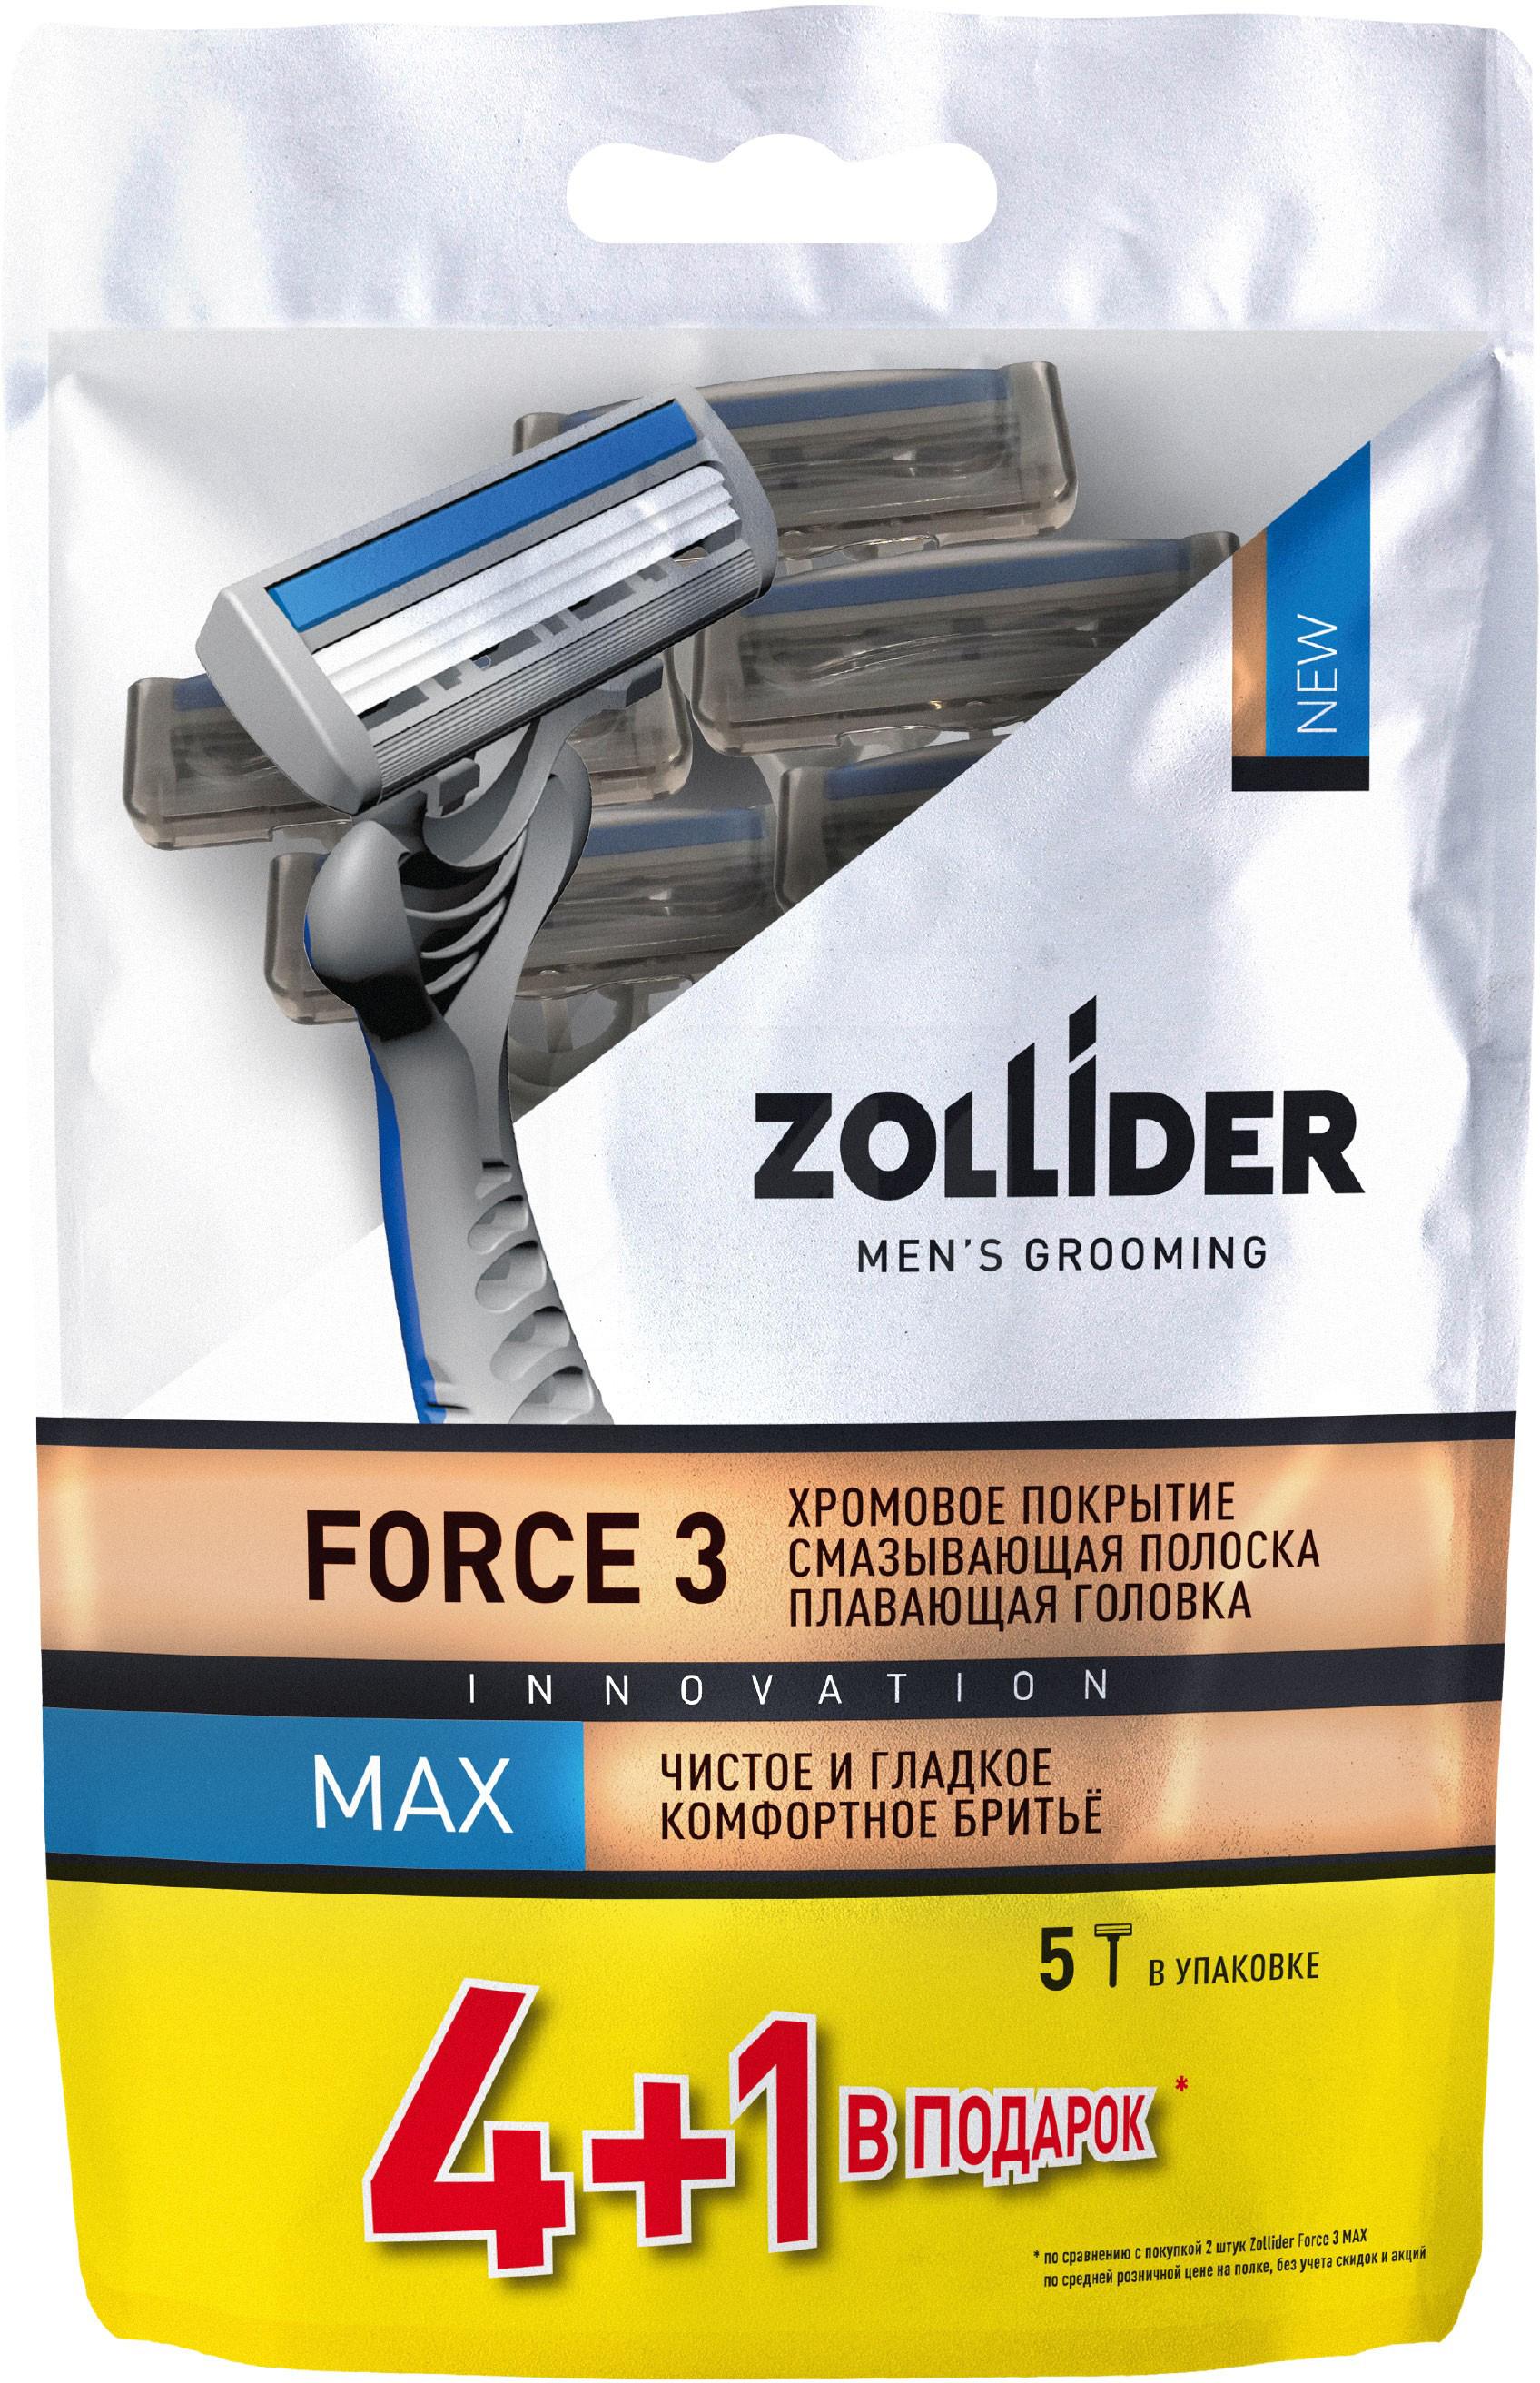 Бритвенные станки мужские Zollider Force 3 Max одноразовые с тройными лезвиями 4 + 1 шт бритвенные станки gillette2 с двумя лезвиями 5 шт